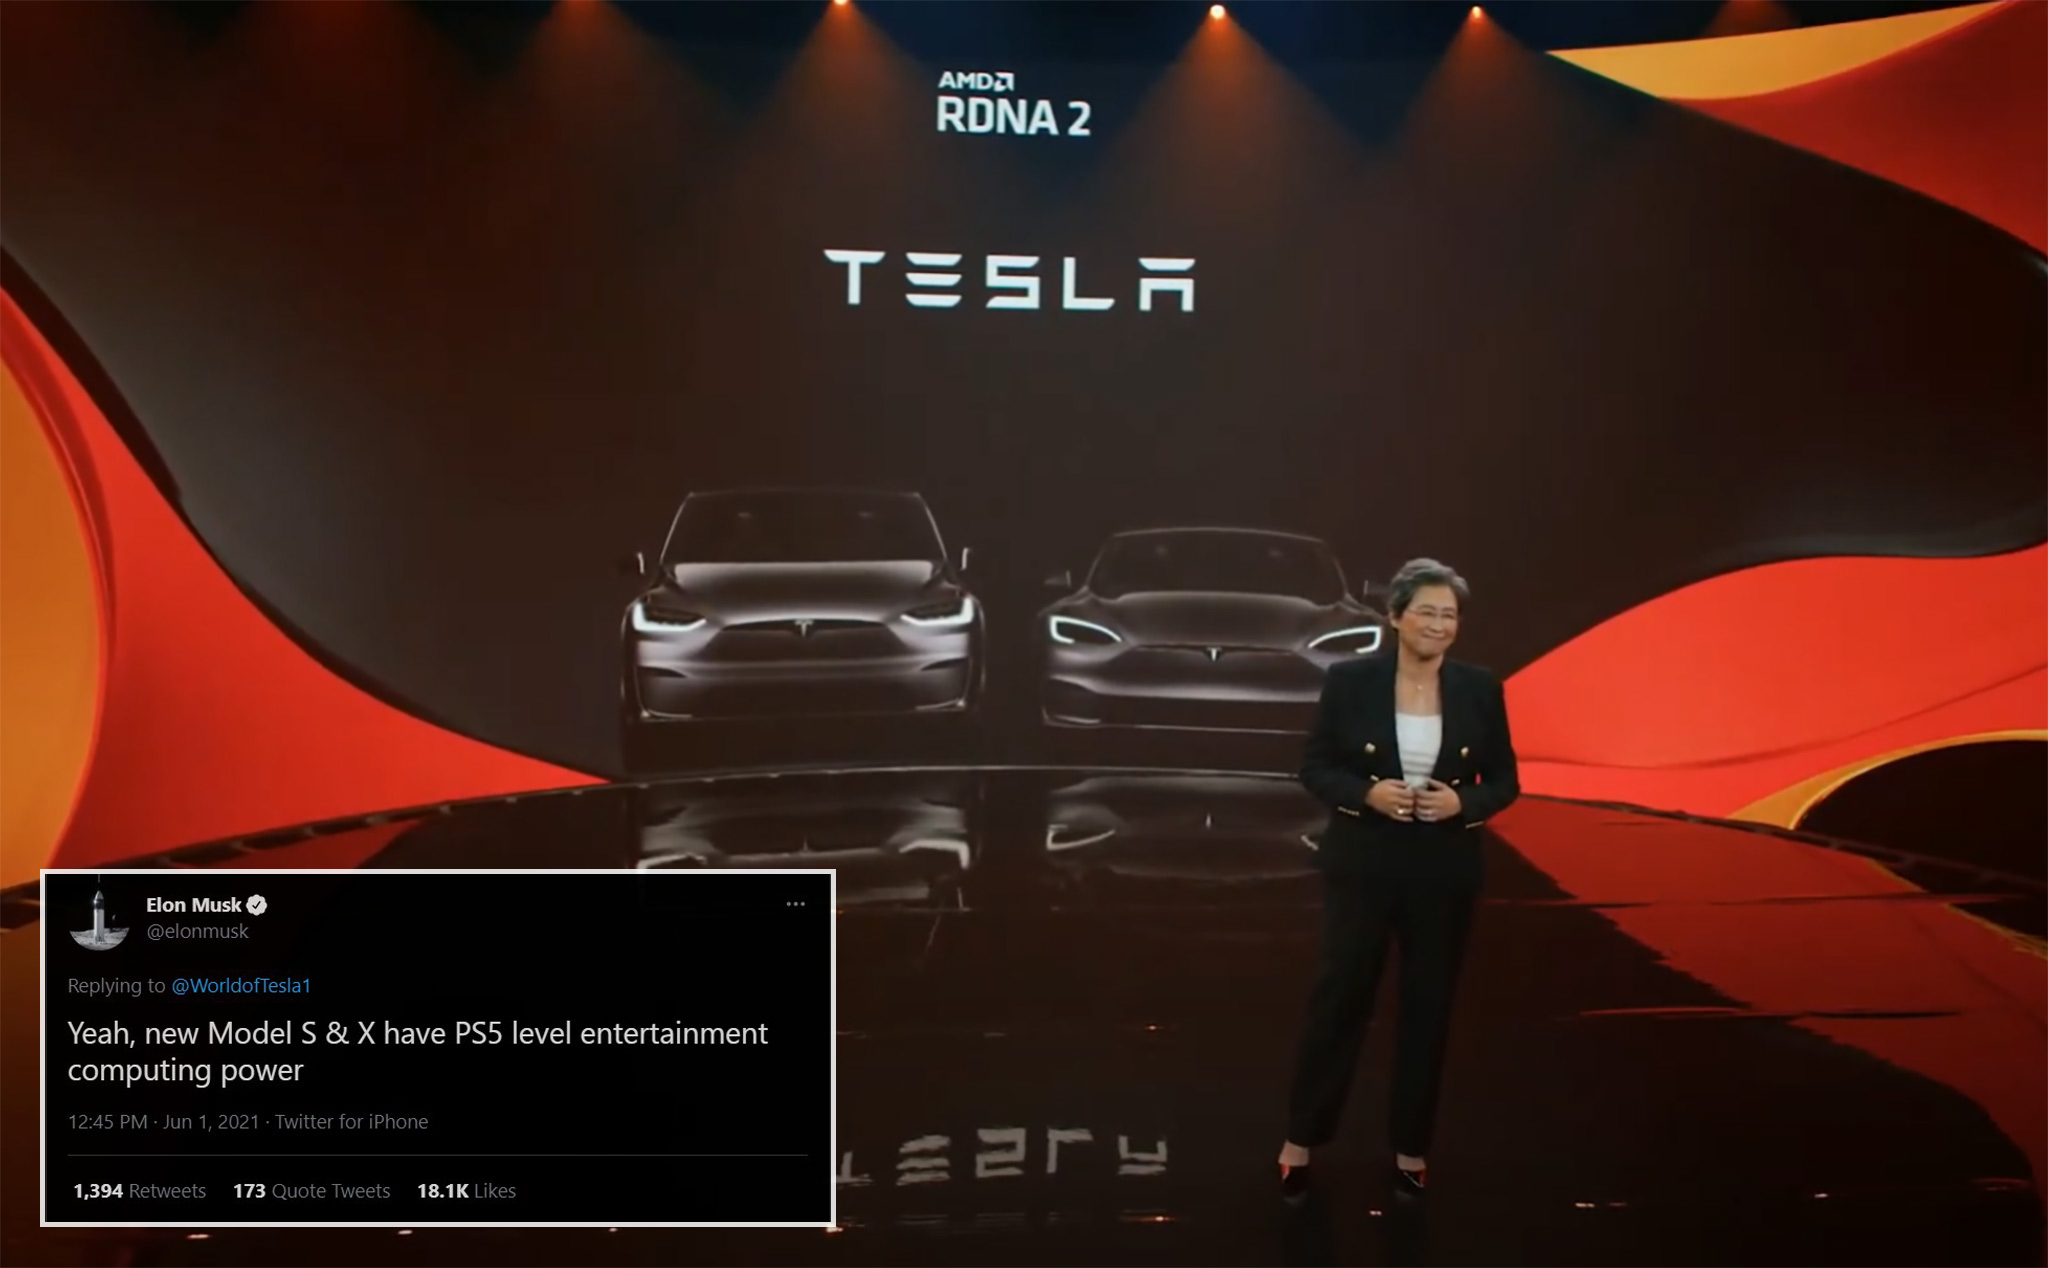 AMD xác nhận máy tính trên xe Tesla chơi được game AAA, Elon Musk nói mạnh cỡ PS5!